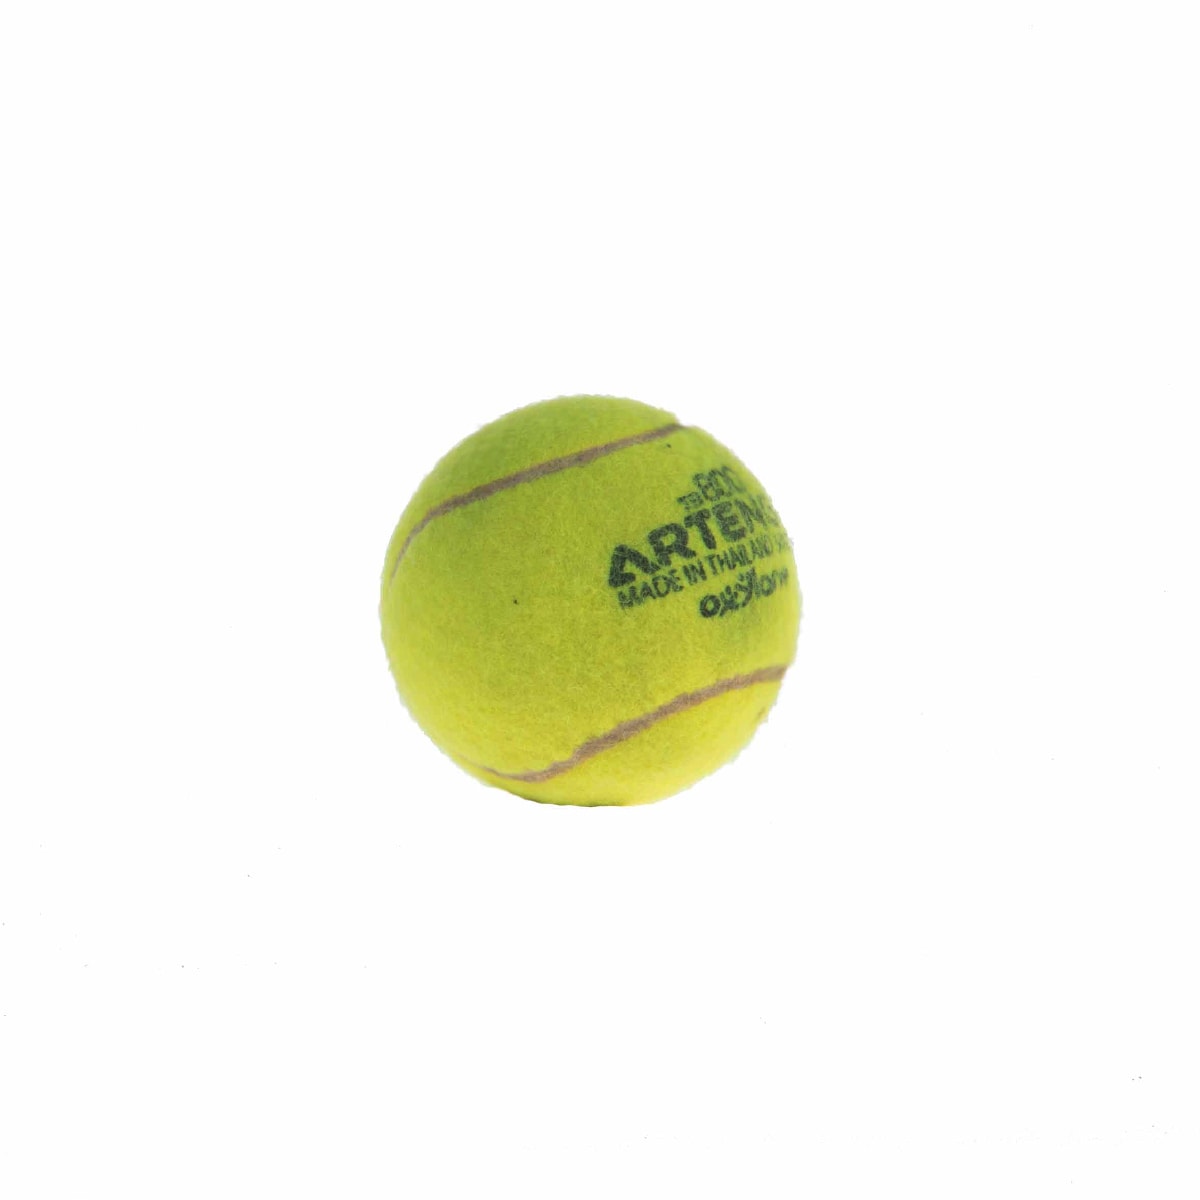  Tennis ball